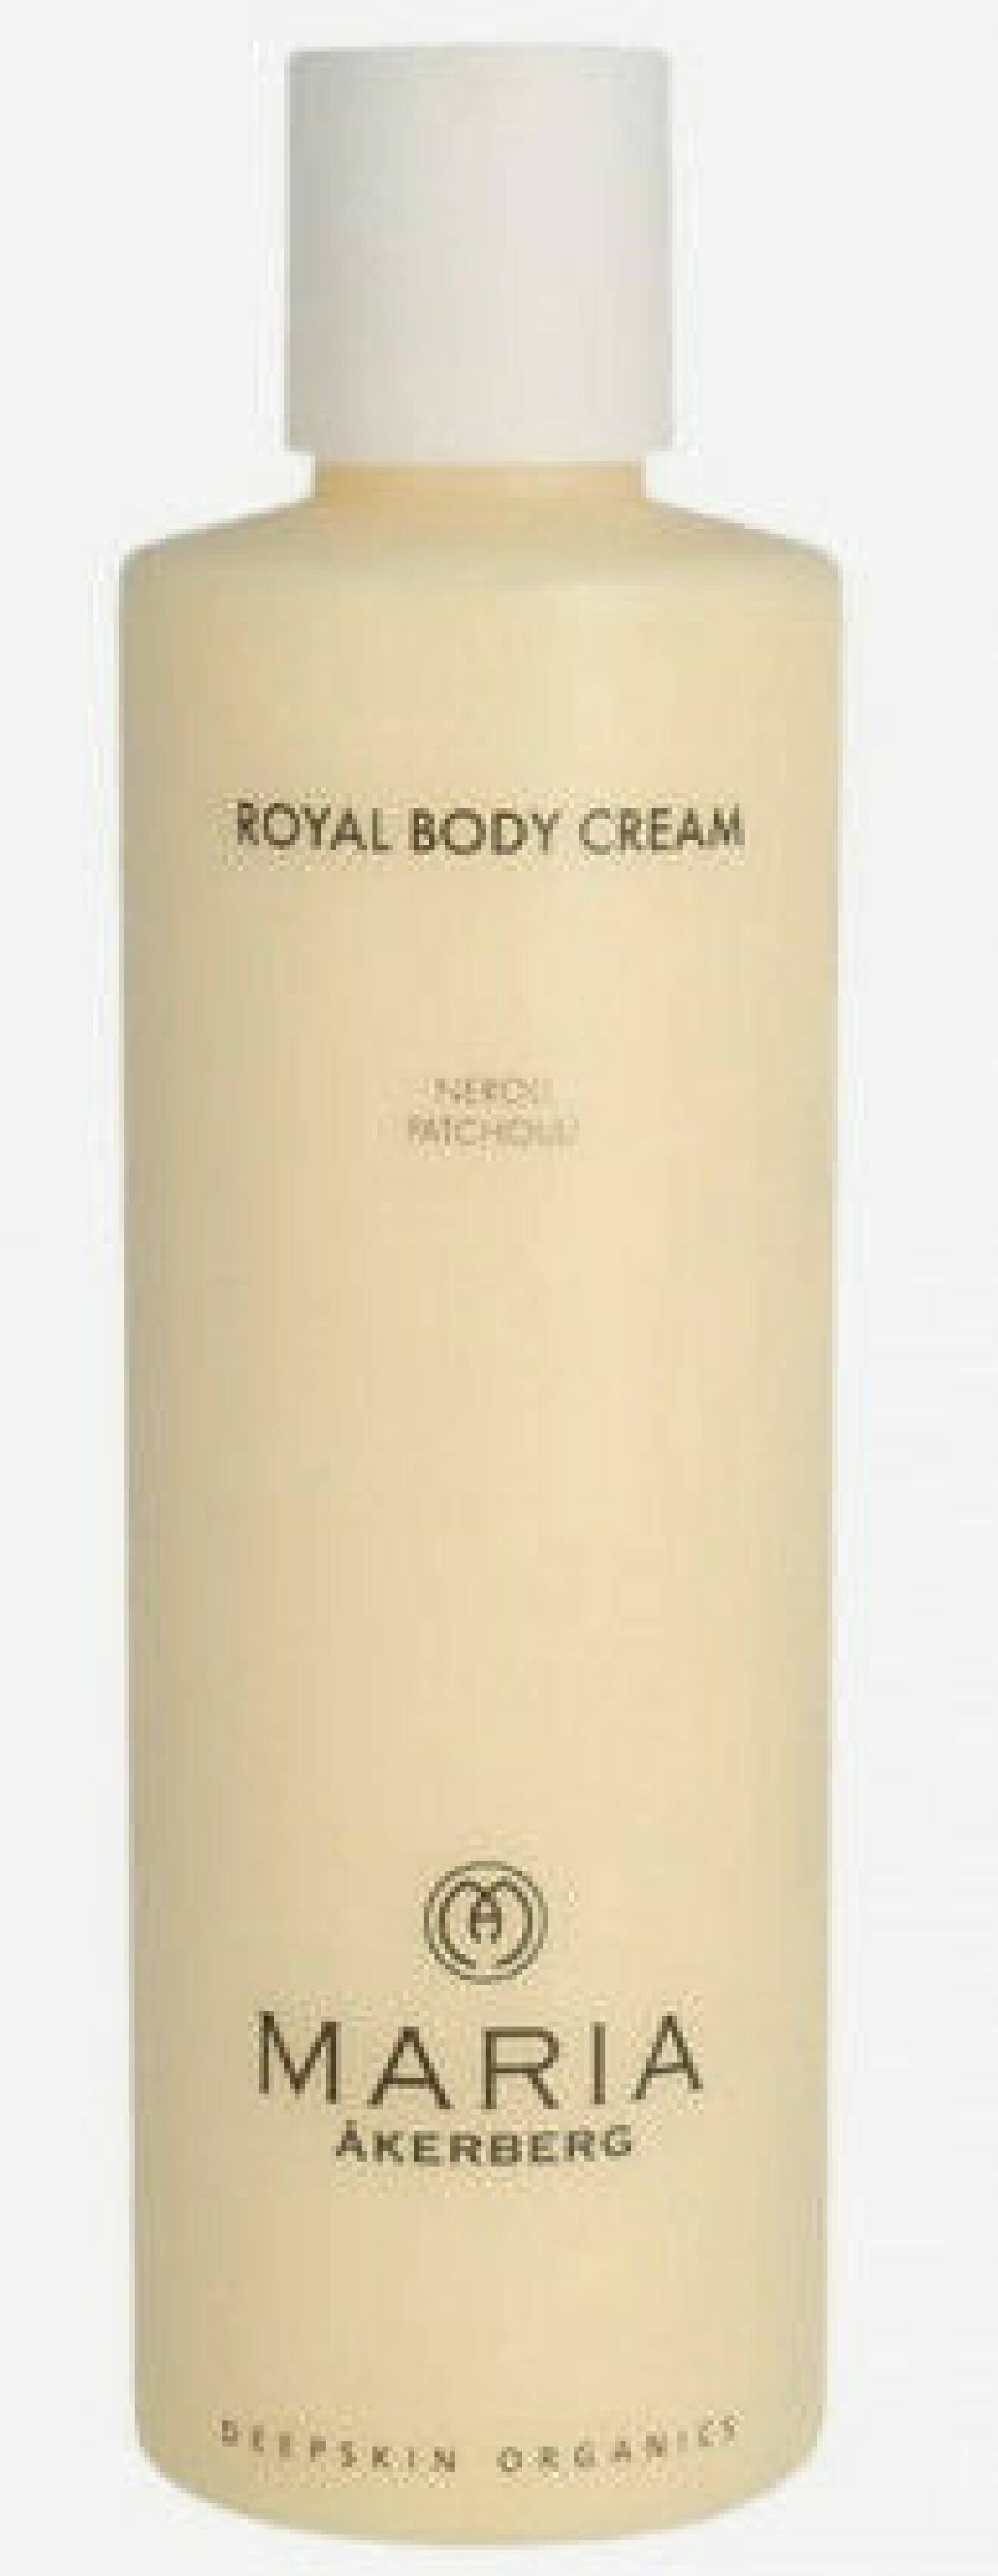 Royal Body Cream från Maria Åkerberg